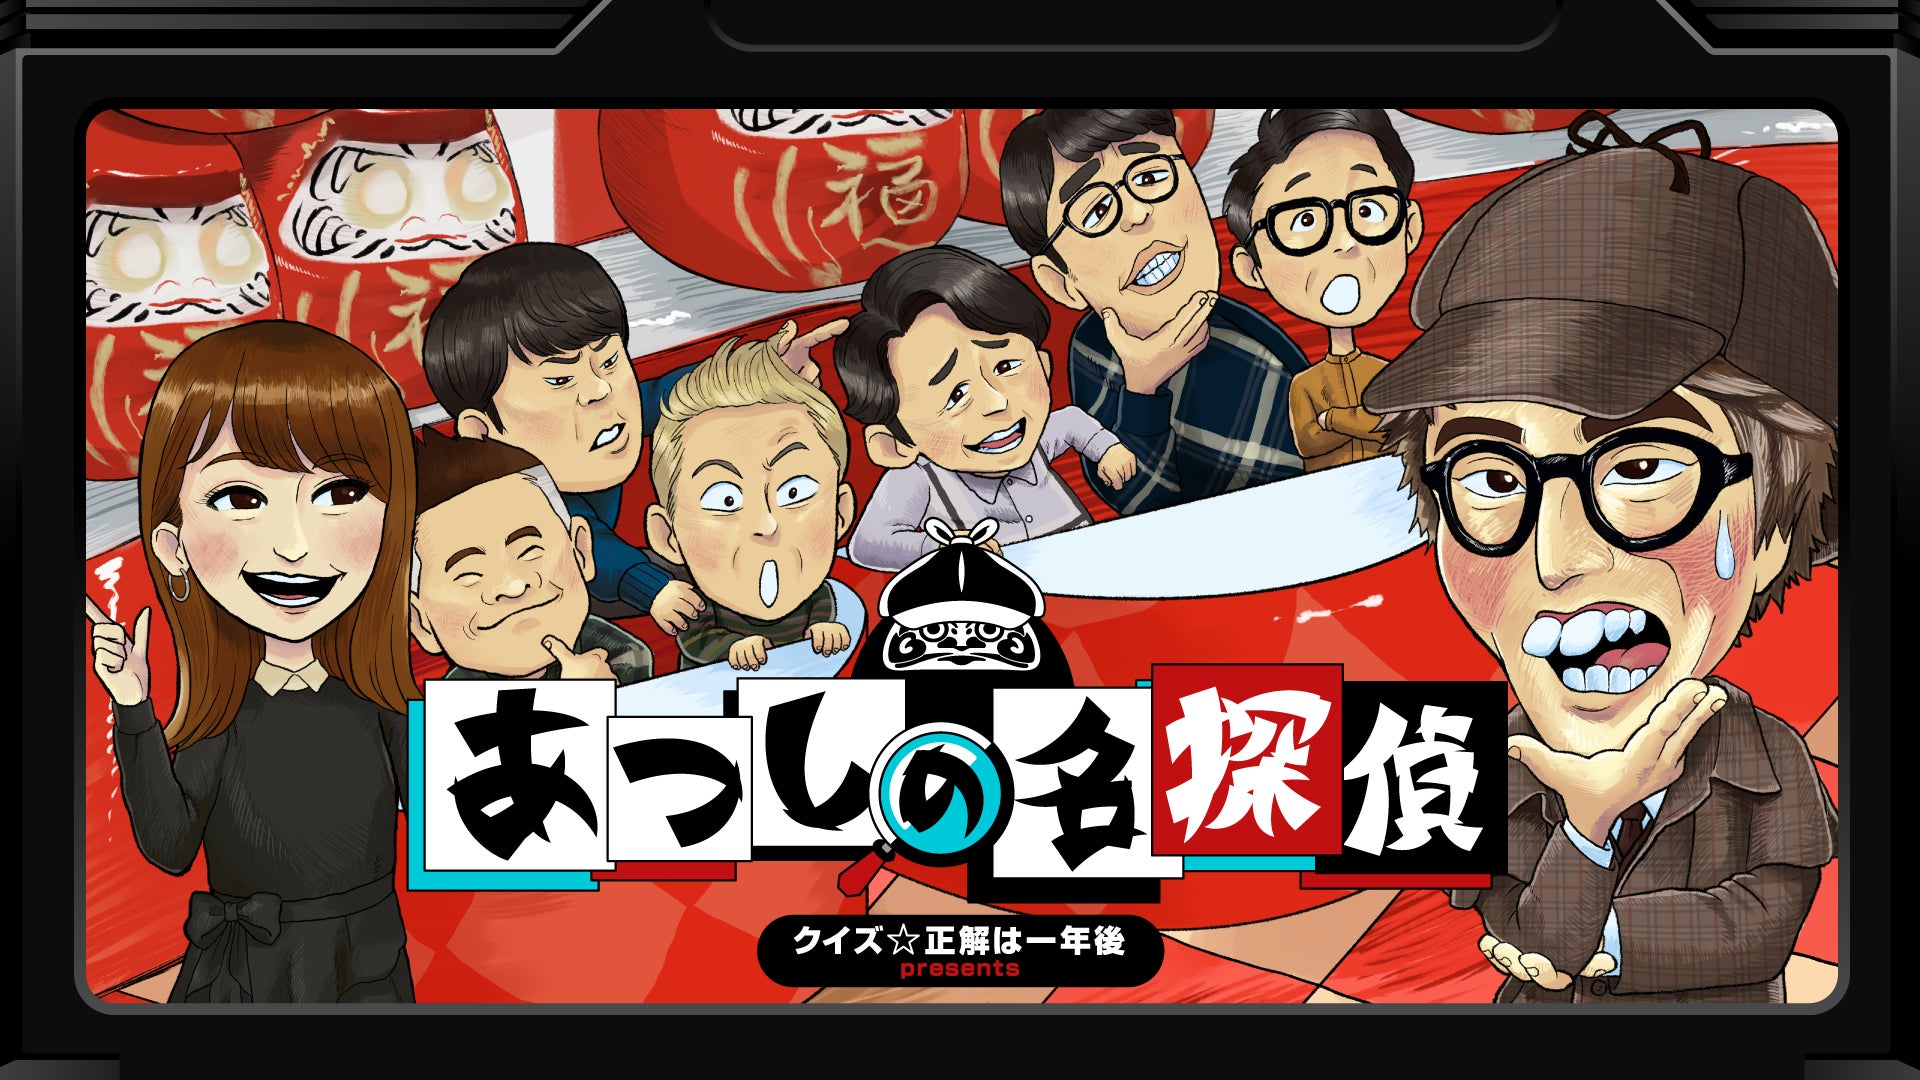 『クイズ☆正解は一年後 presents あつしの名探偵』Nintendo Switch™ パッケージ通常版 7/25に発売決定！